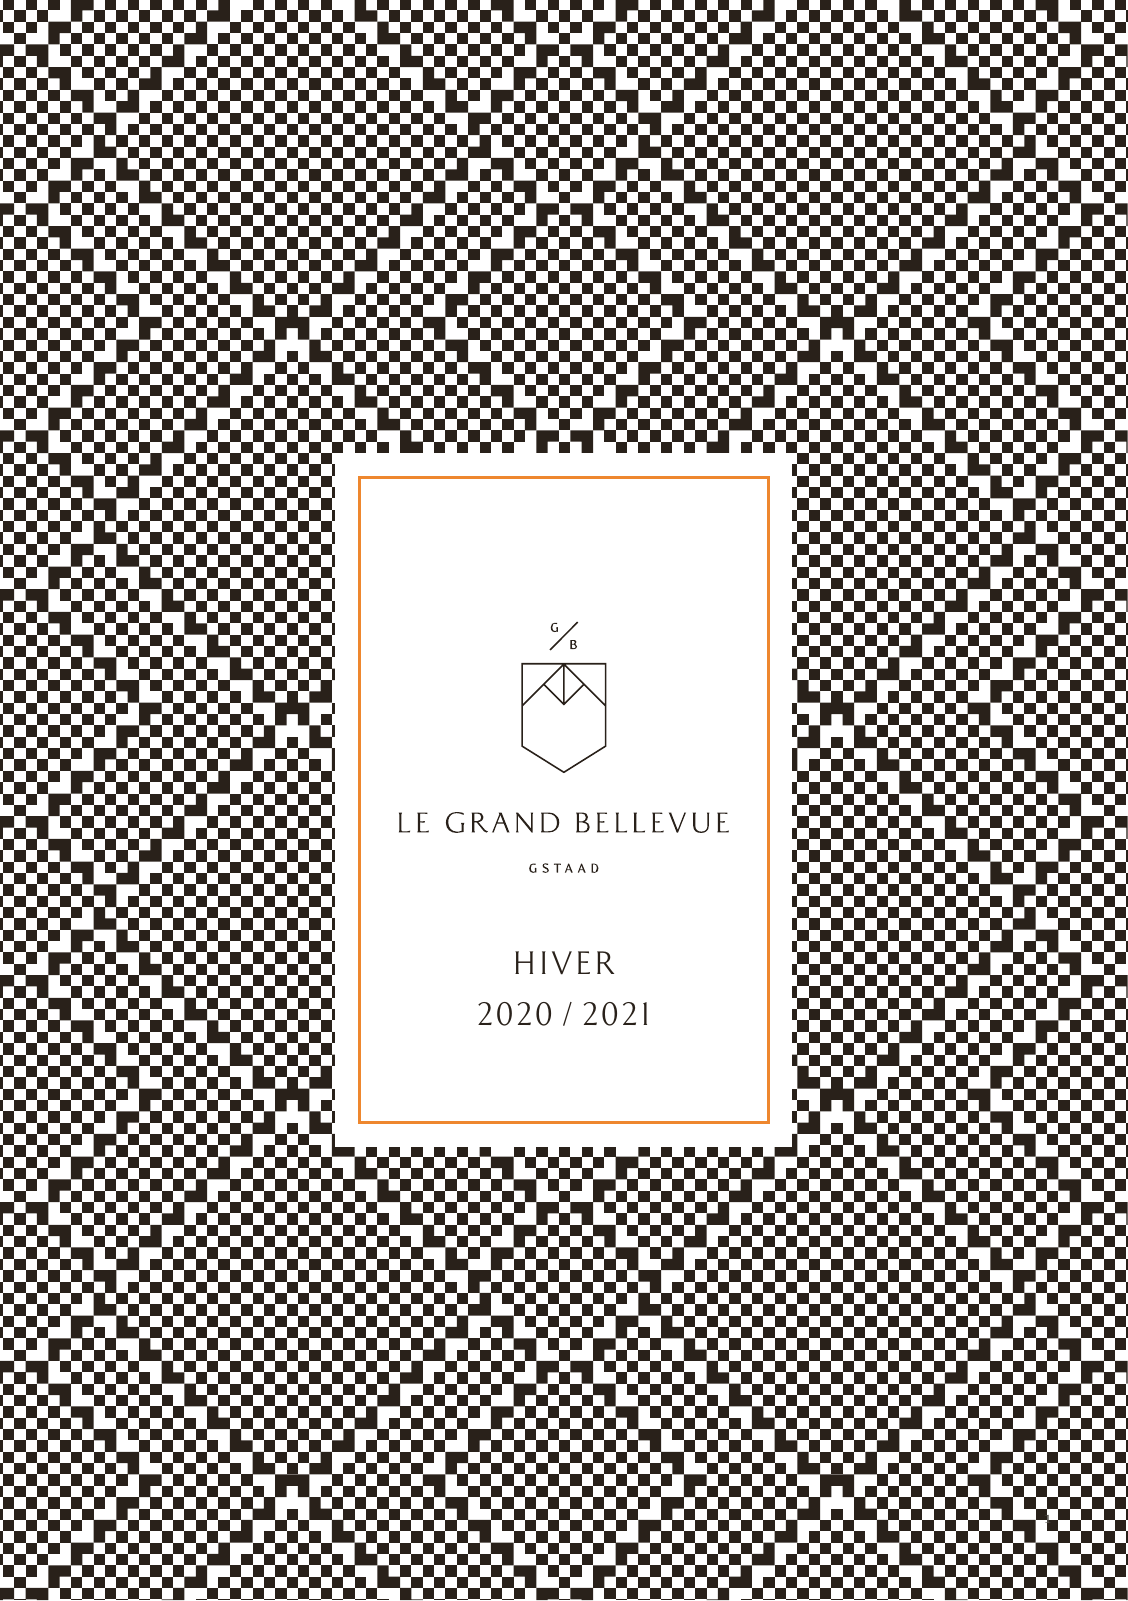 Vorschau Le Grand Bellevue Hiver 2020/21 FR Seite 1